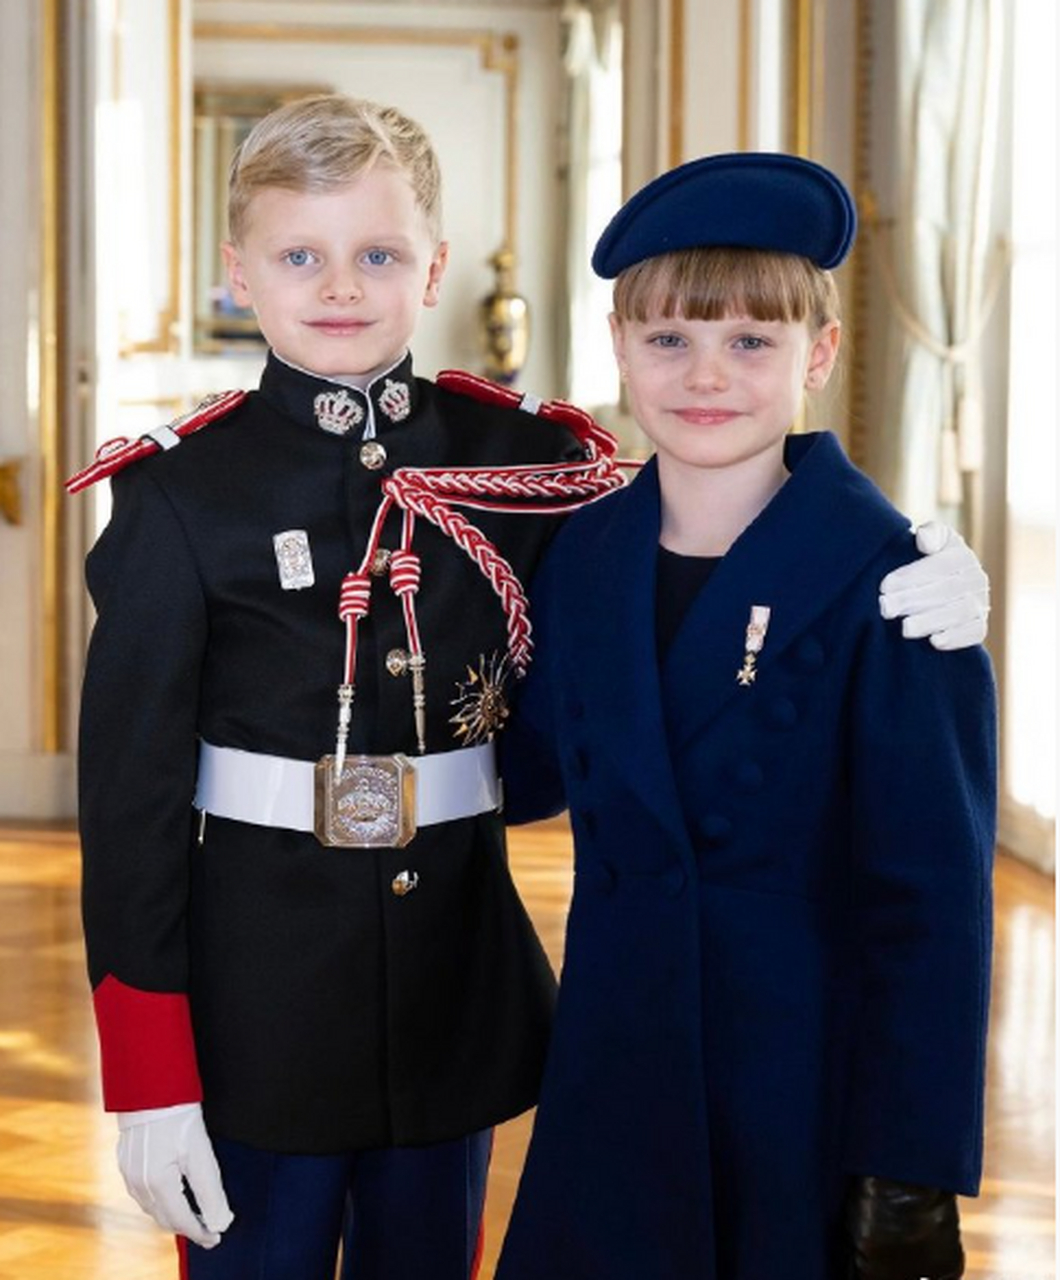 12月10日,摩纳哥雅克王储和加布里拉公主的9岁生日照片